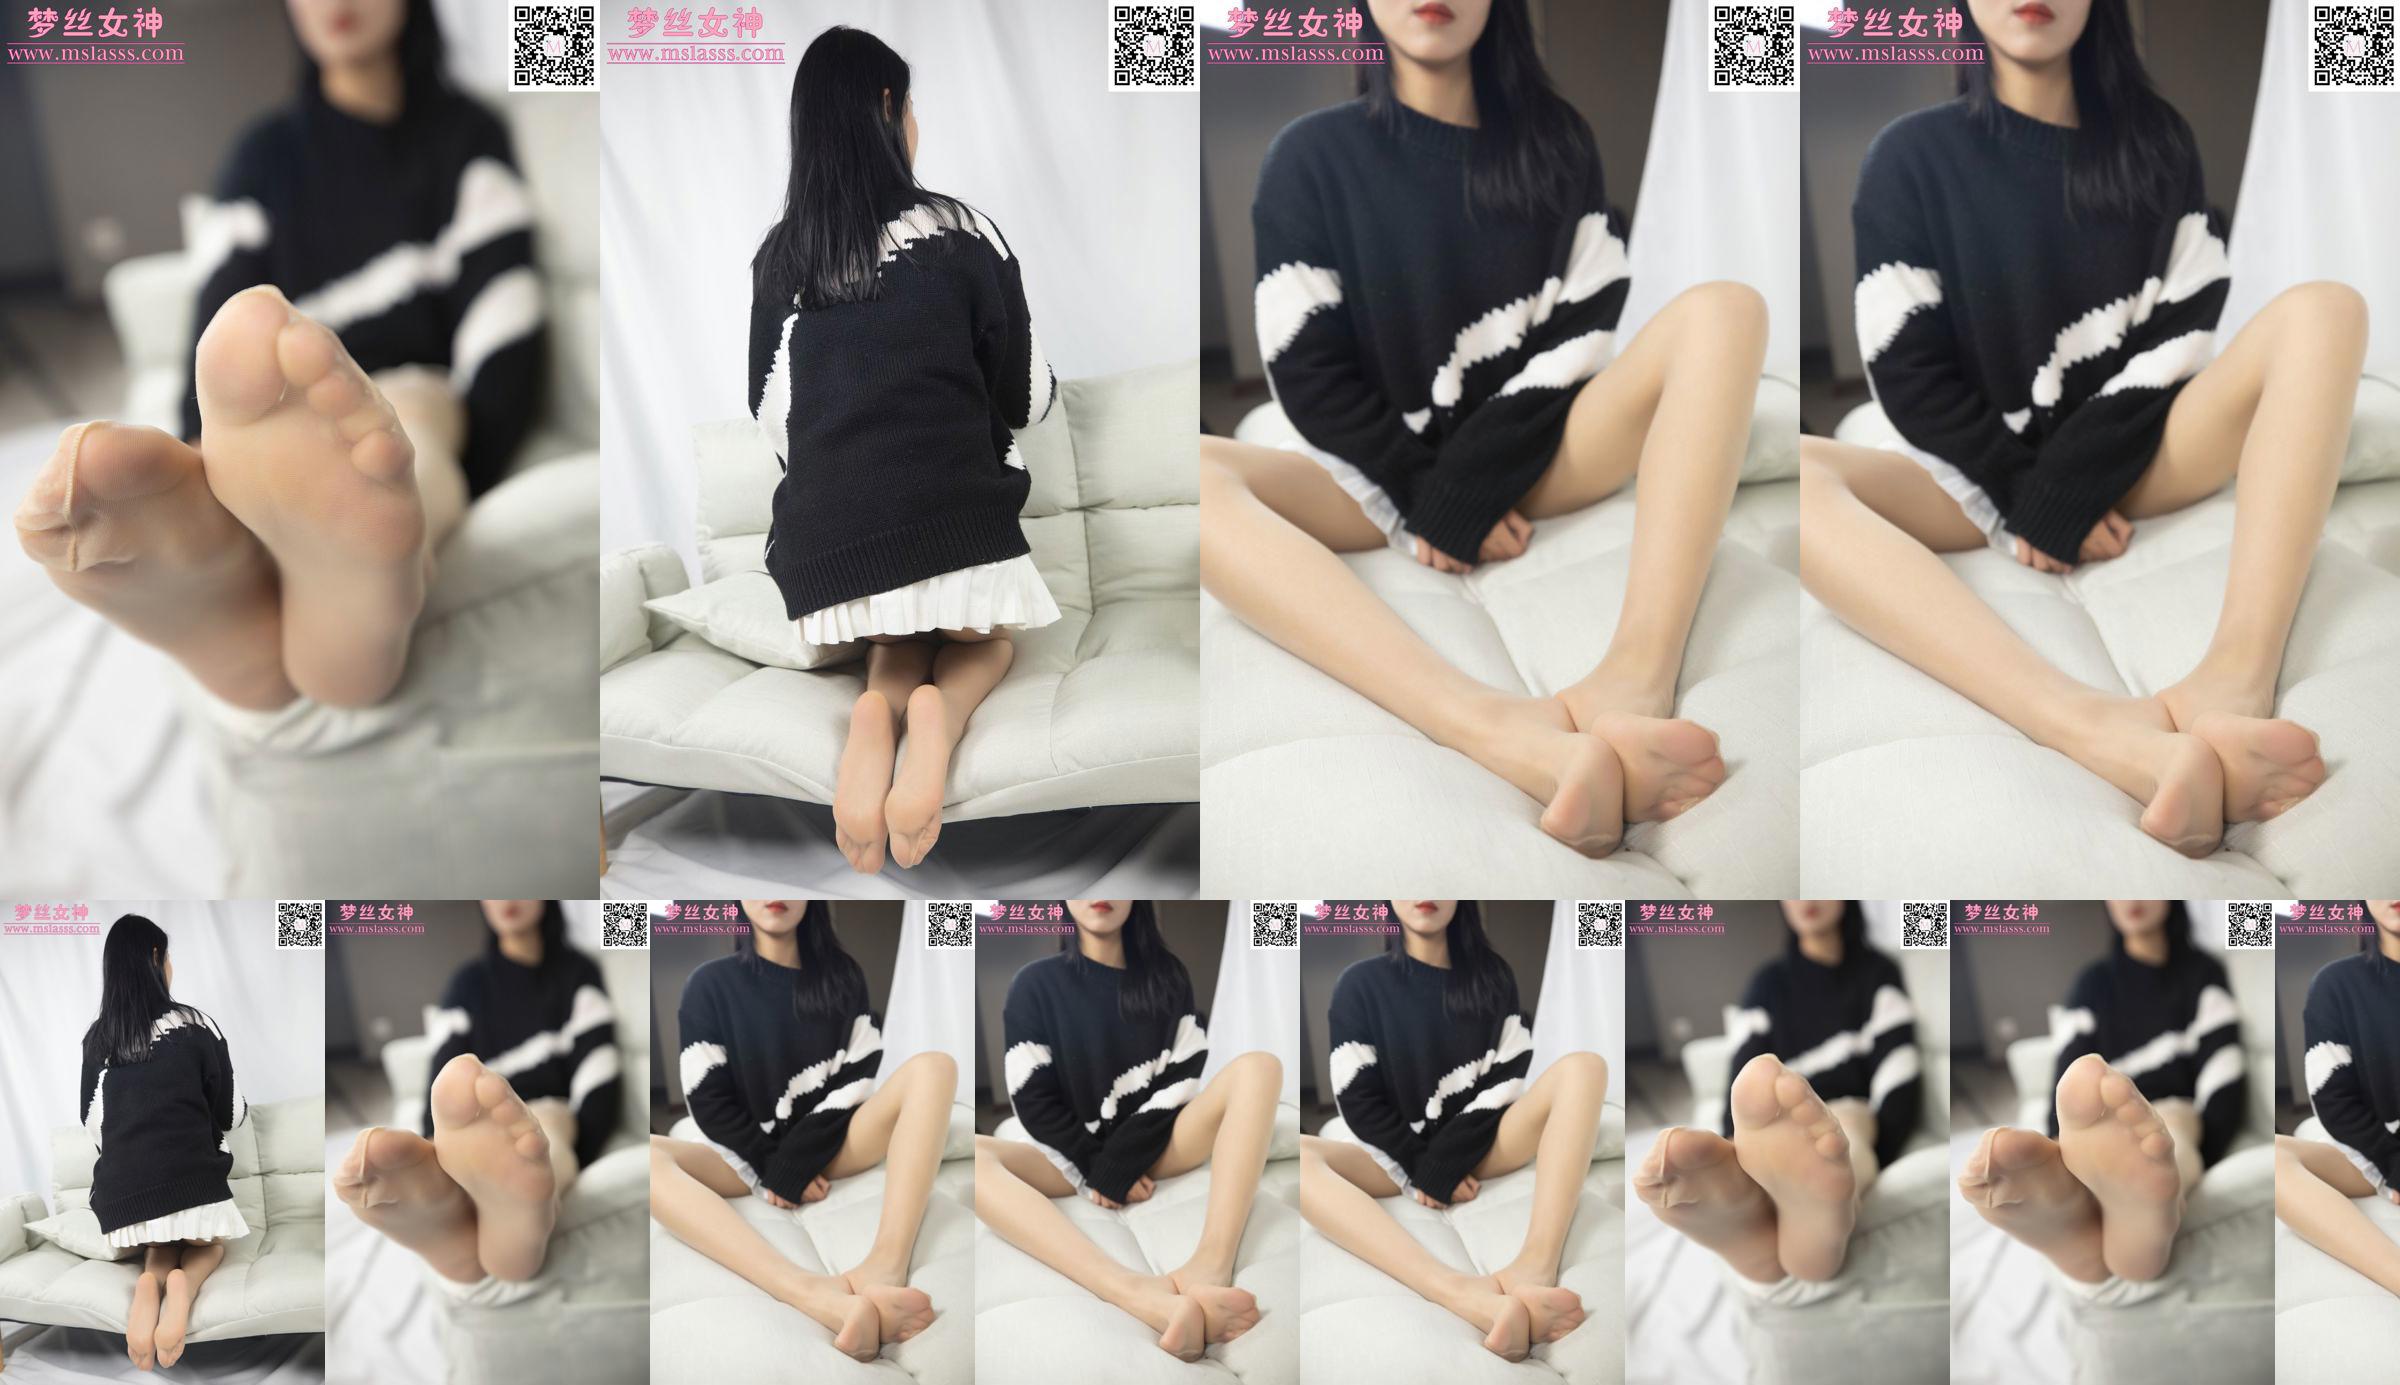 [Goddess of Dreams MSLASS] Sweter Xiaomu nie może powstrzymać jej długich nóg No.8c3c1f Strona 4